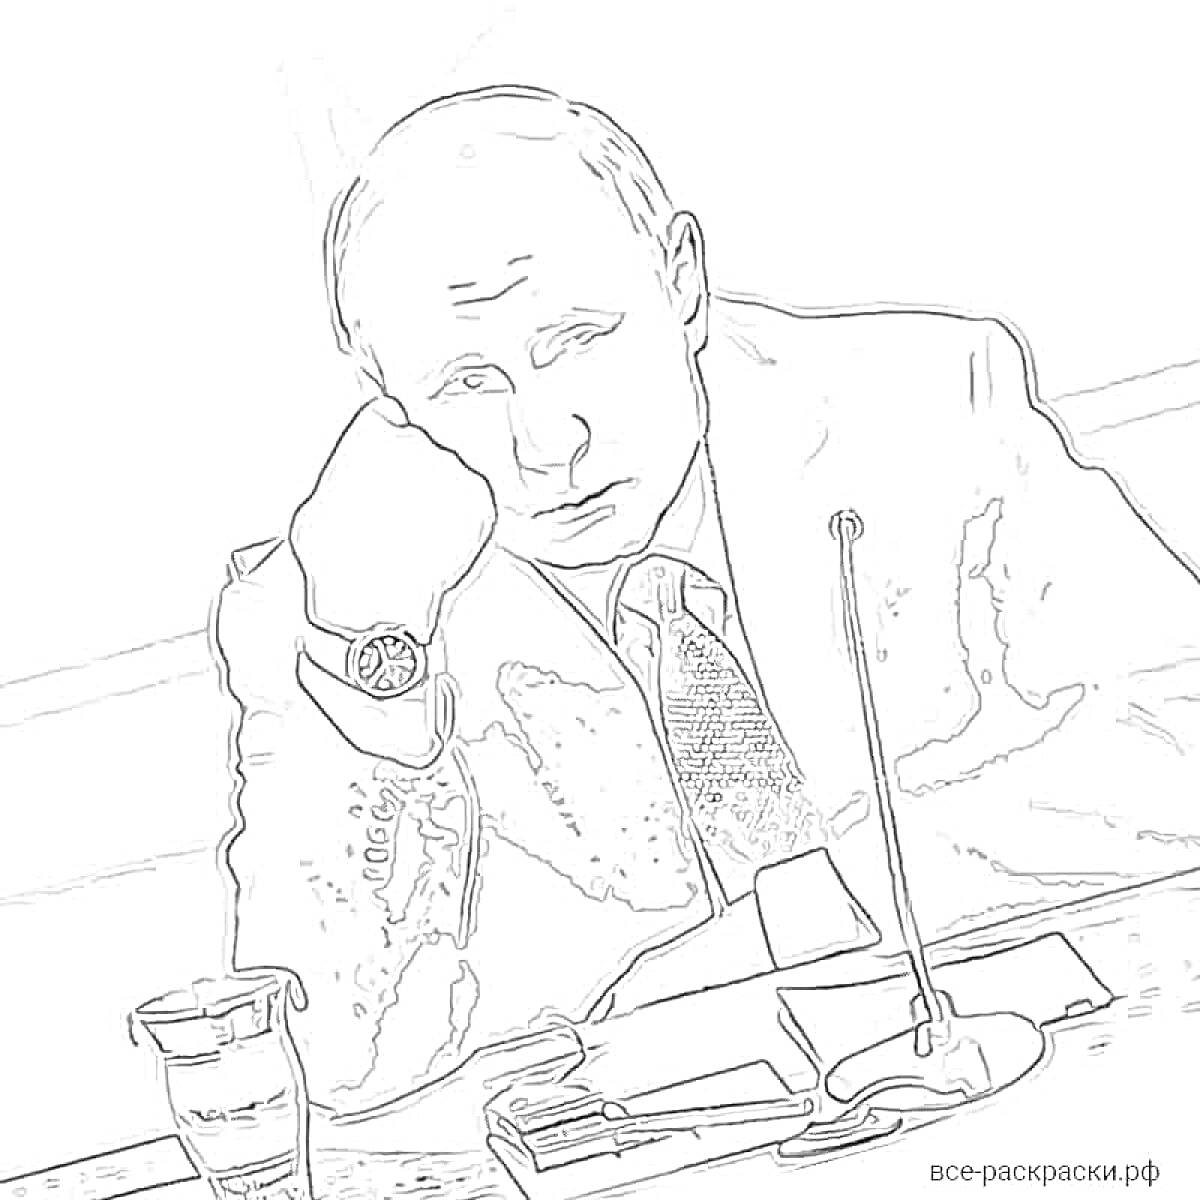 РаскраскаЧеловек в костюме за столом с микрофоном, стаканом воды, бумагами и ручкой